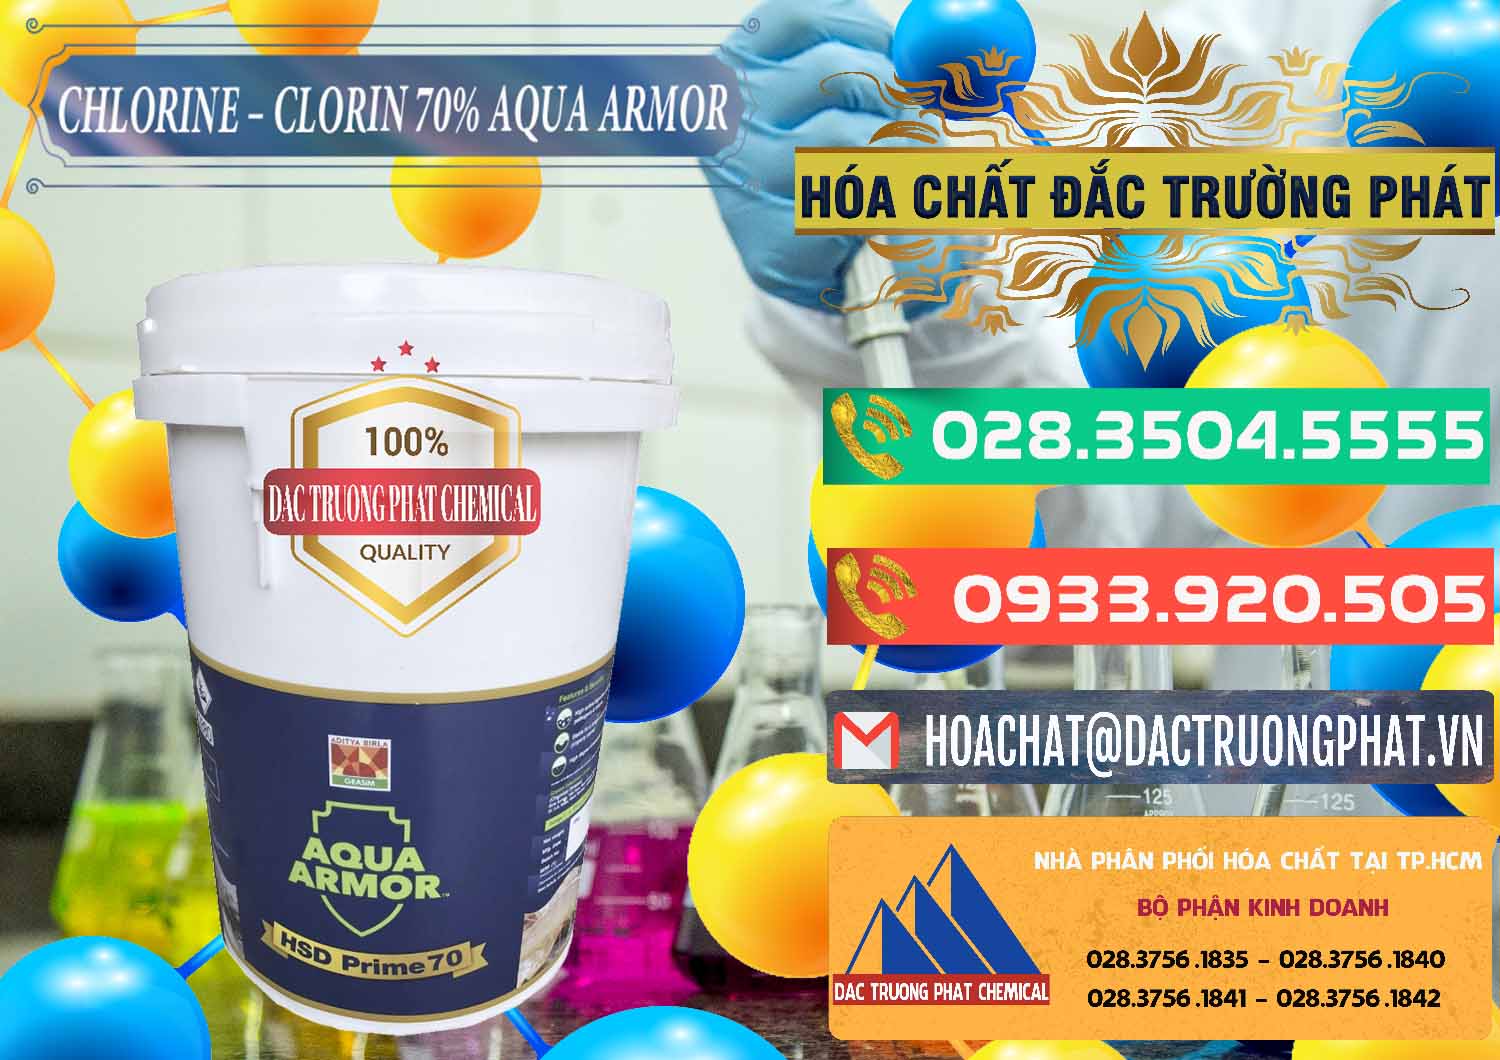 Đơn vị chuyên bán - cung cấp Chlorine – Clorin 70% Aqua Armor Aditya Birla Grasim Ấn Độ India - 0241 - Nơi phân phối và kinh doanh hóa chất tại TP.HCM - congtyhoachat.com.vn